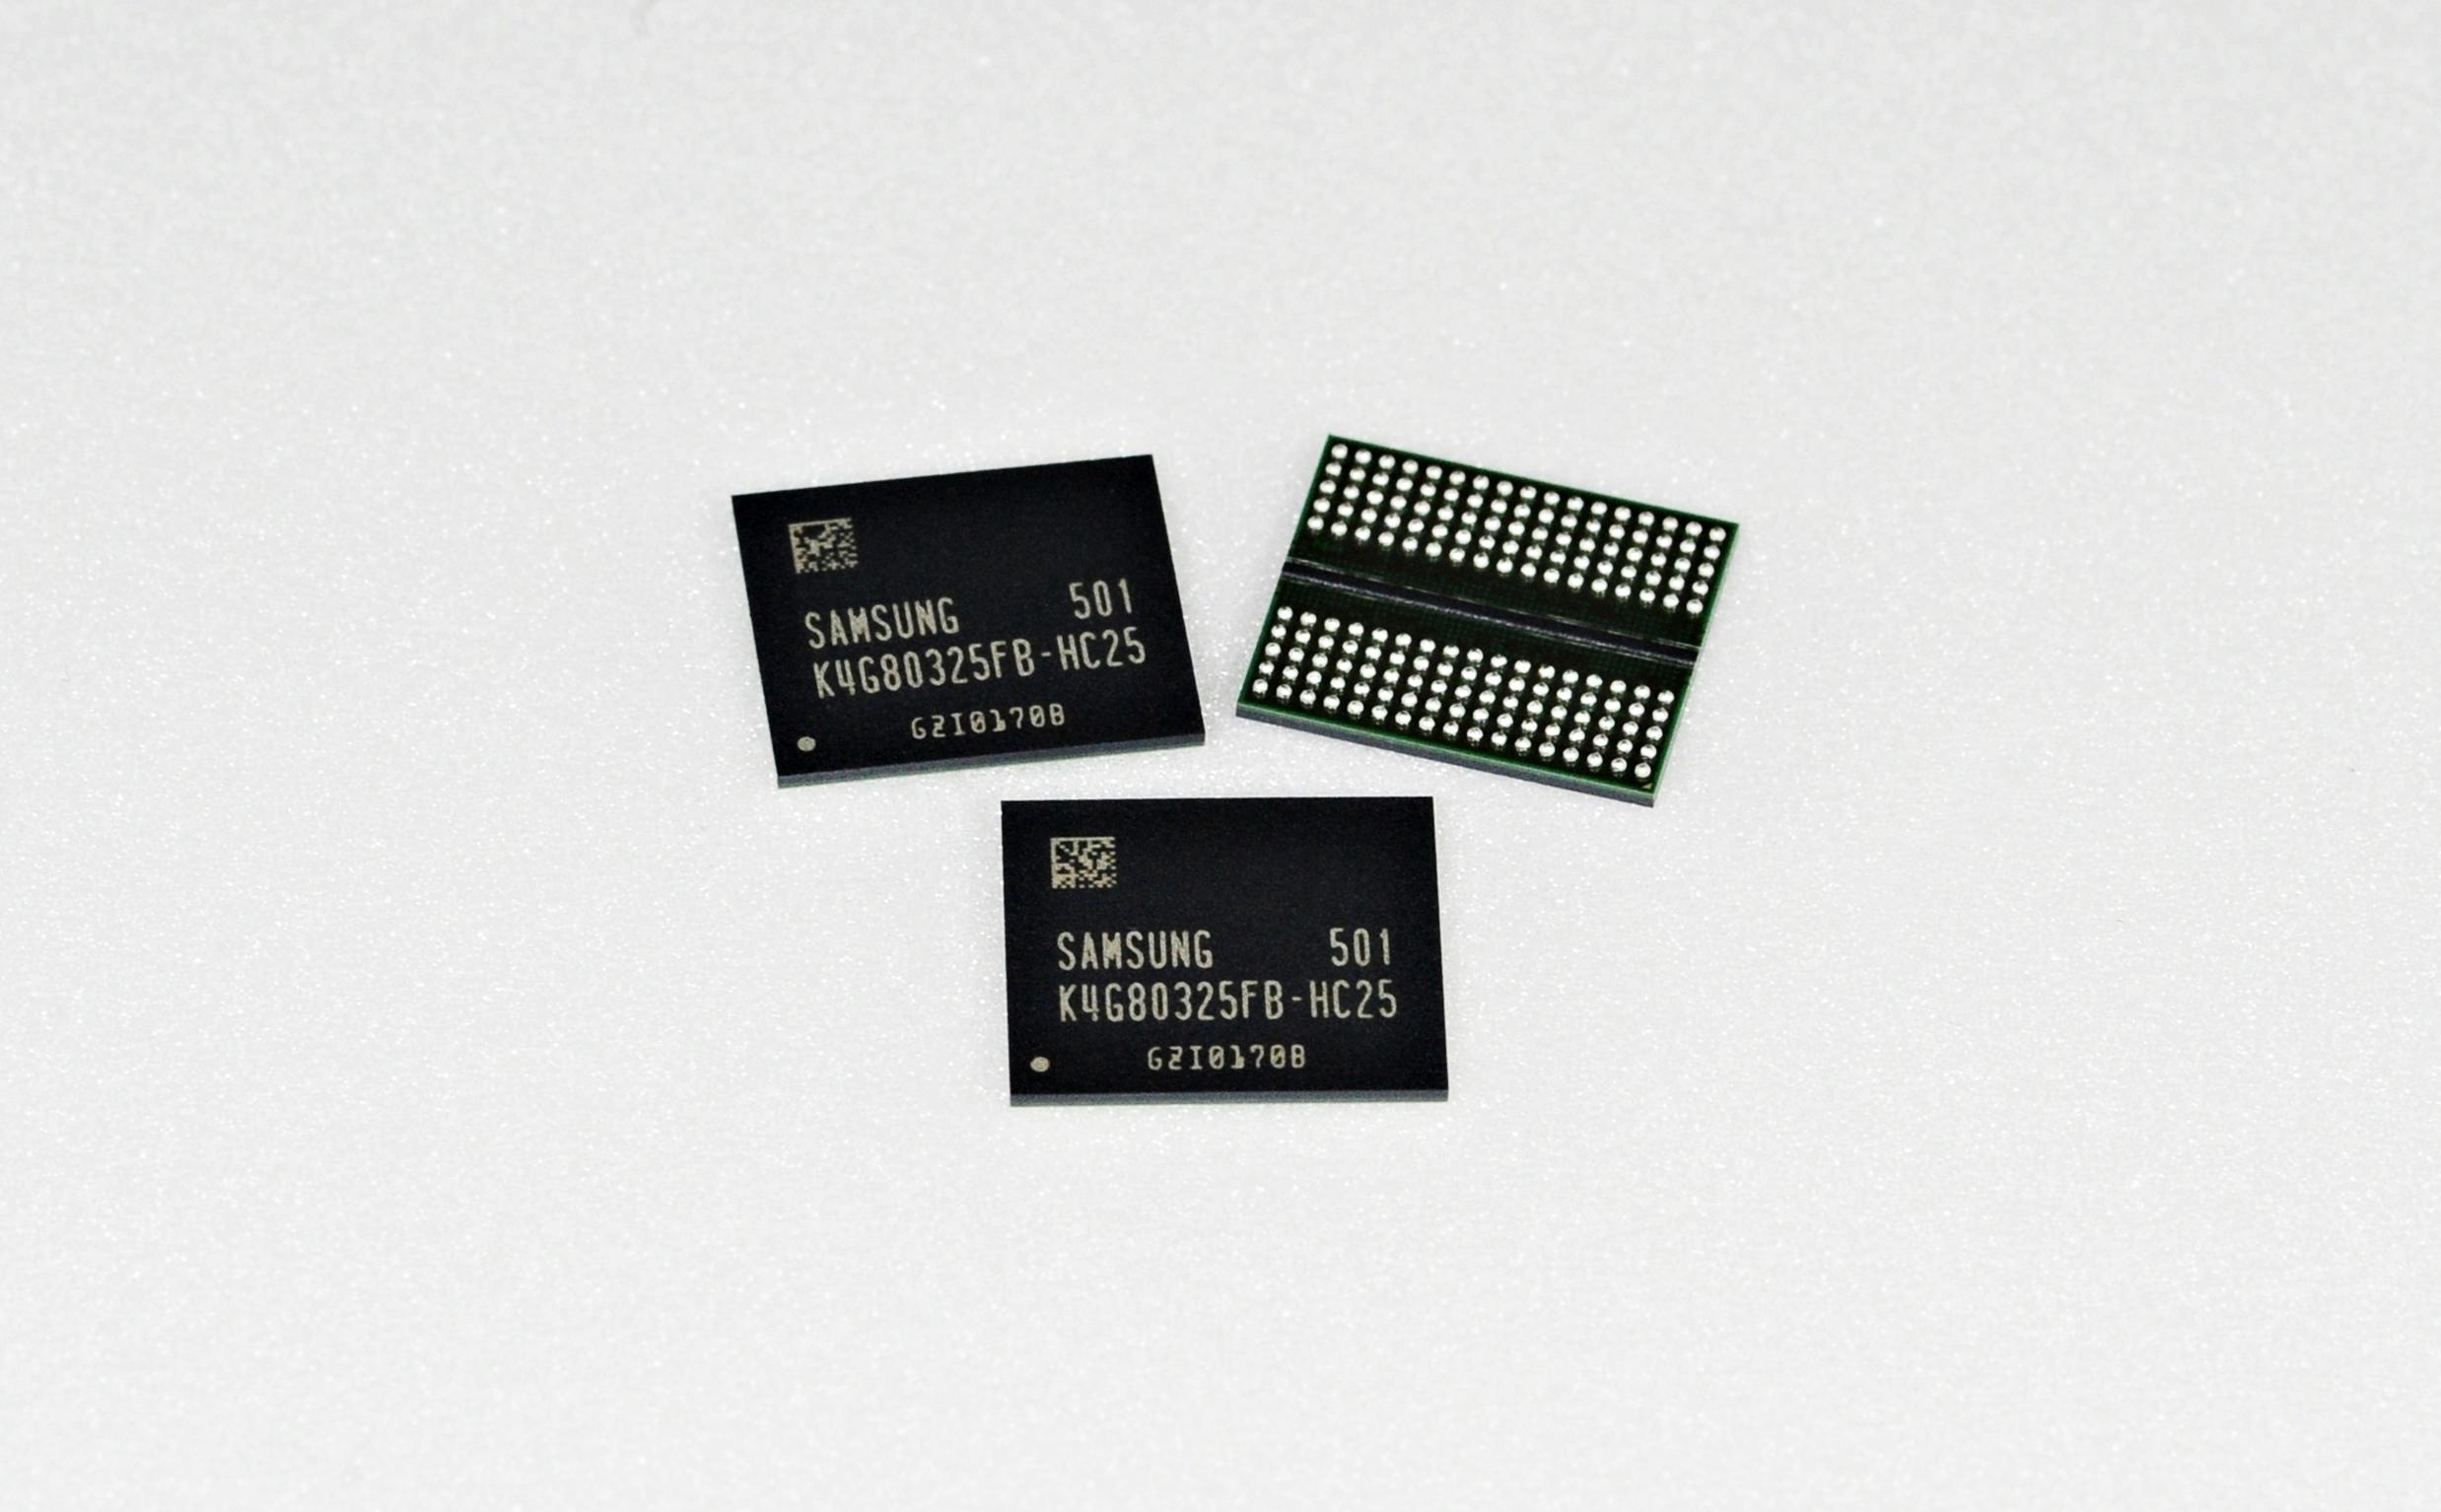 Samsung er den ledende produsenten av GDDR5-minne, her avbildet.